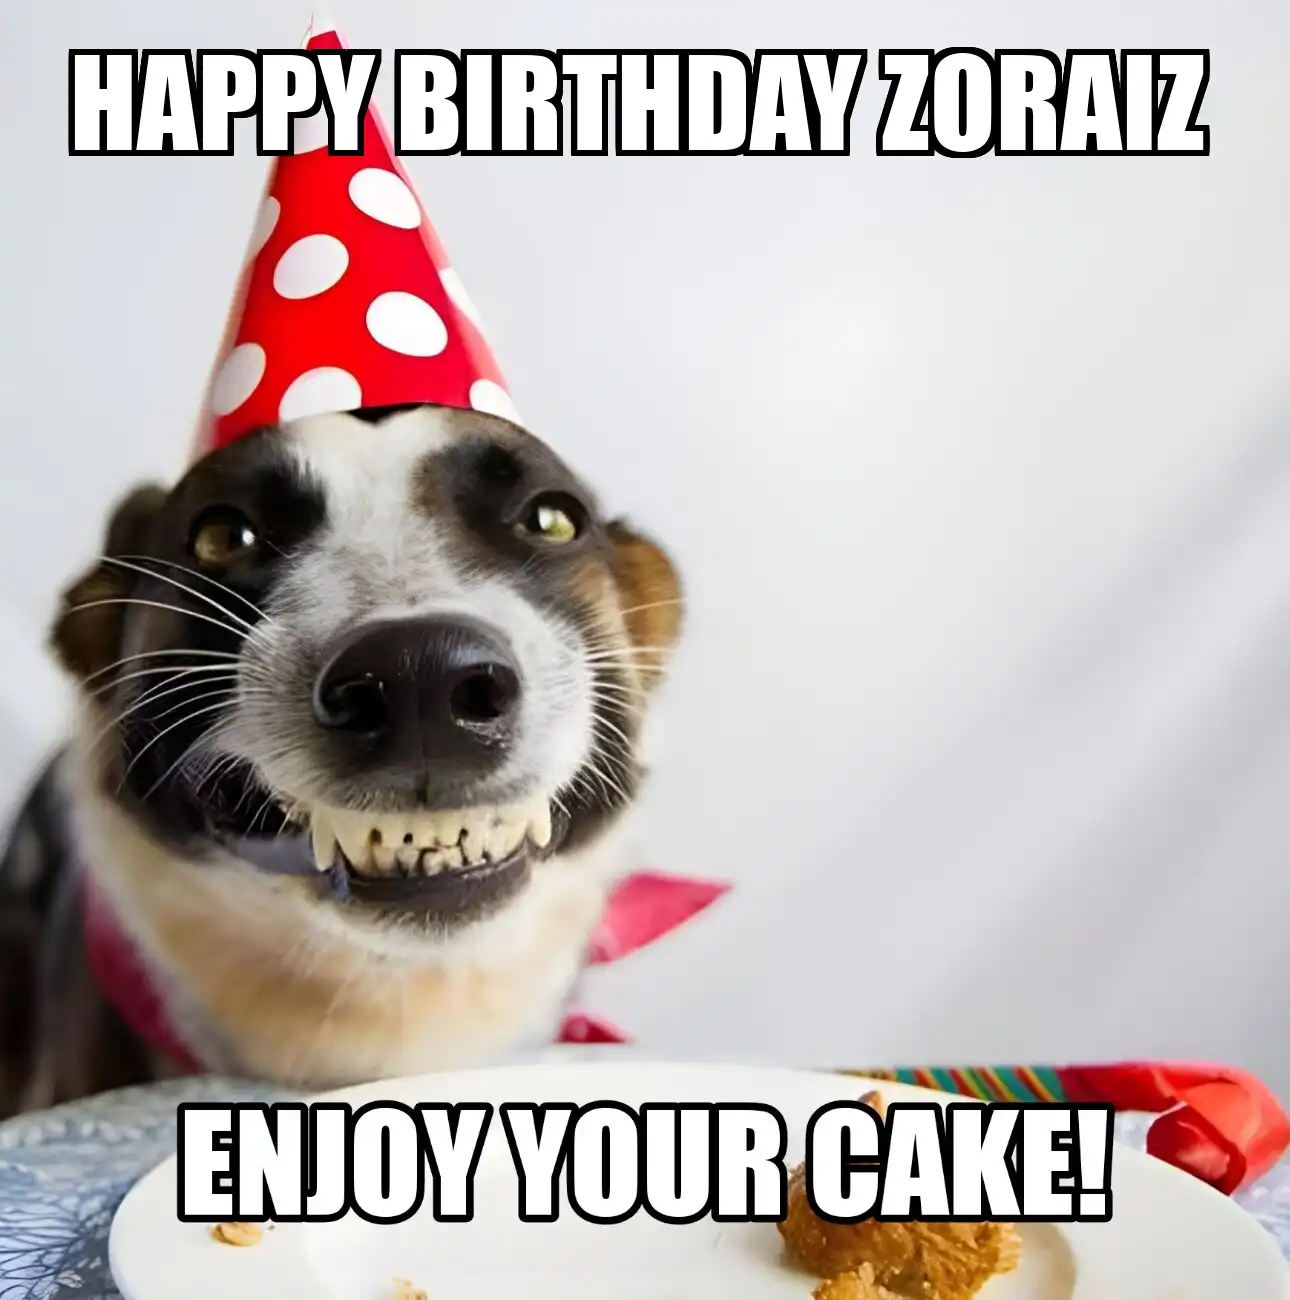 Happy Birthday Zoraiz Enjoy Your Cake Dog Meme